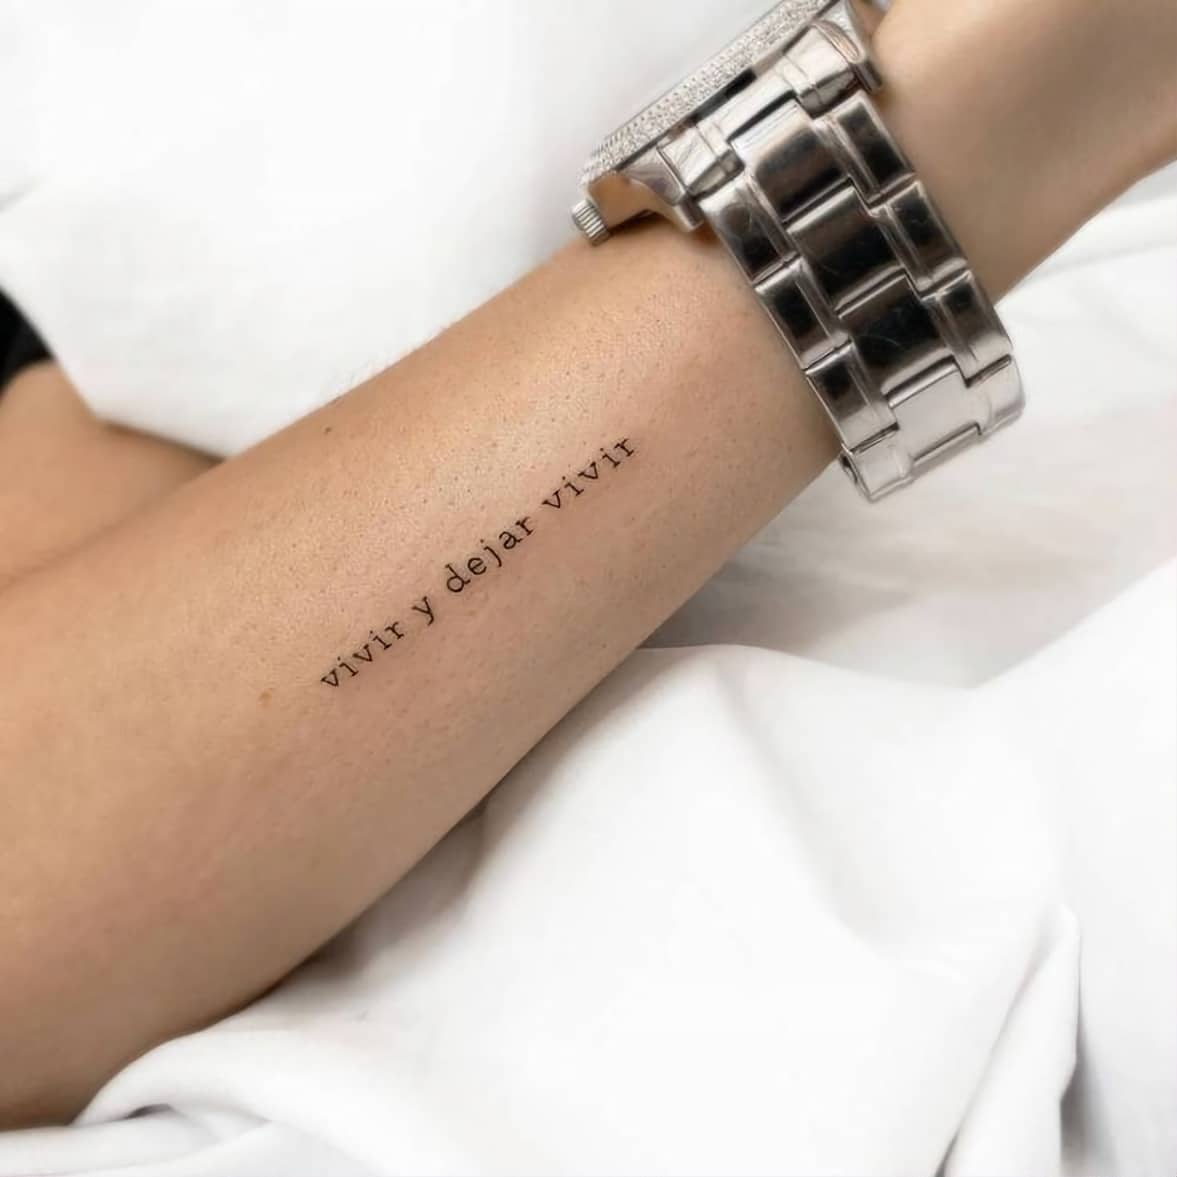 Frases para tatuajes - Vivir y dejar vivir